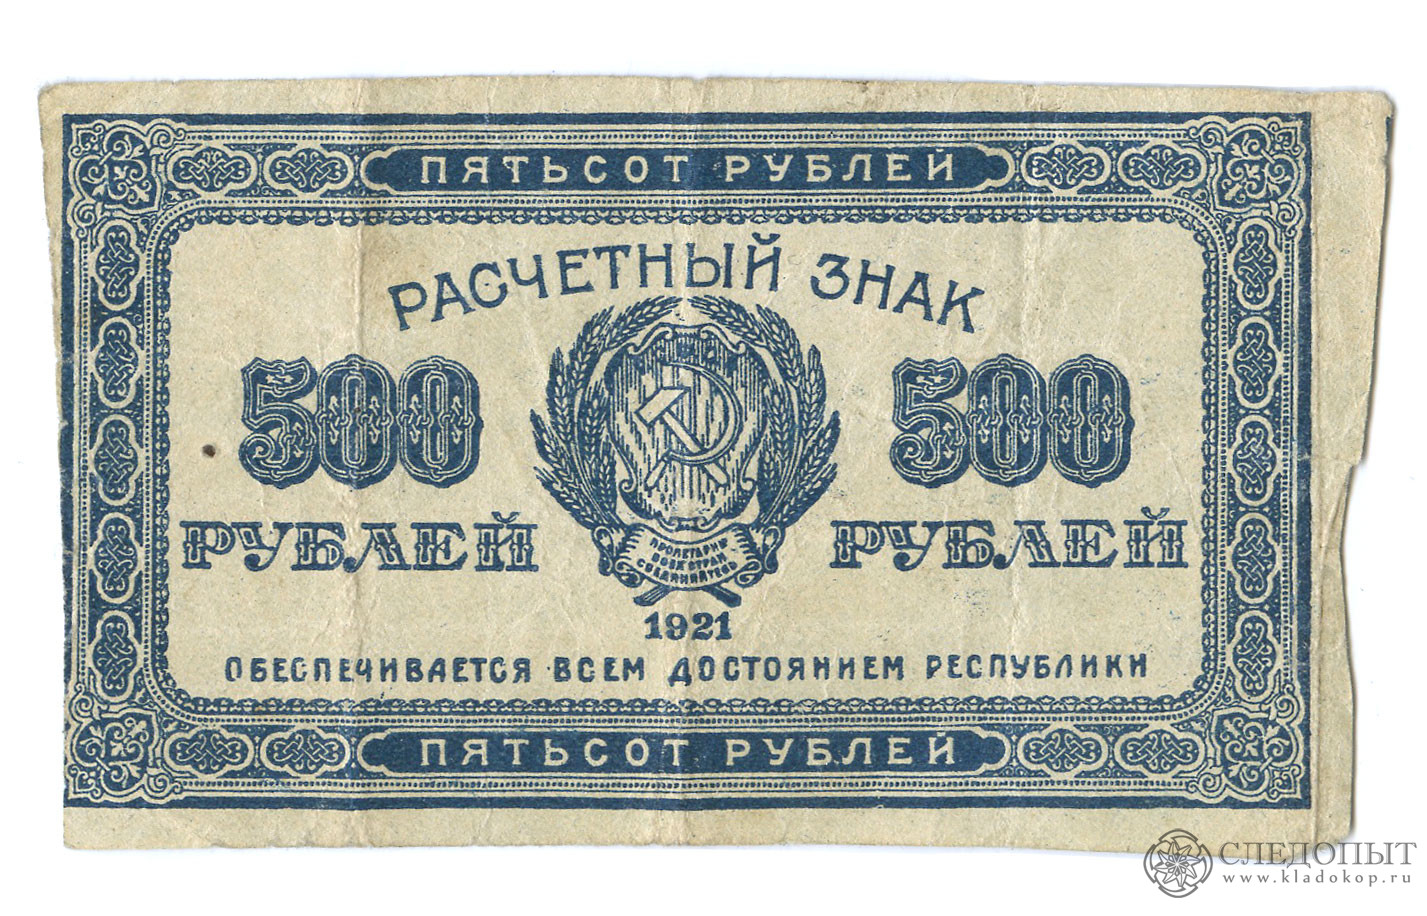 Пятьсот четыре рубля. 500 Рублей 1921. 500 Руб 1921. Купюры 1921. Банкнота 100 рублей 1921.